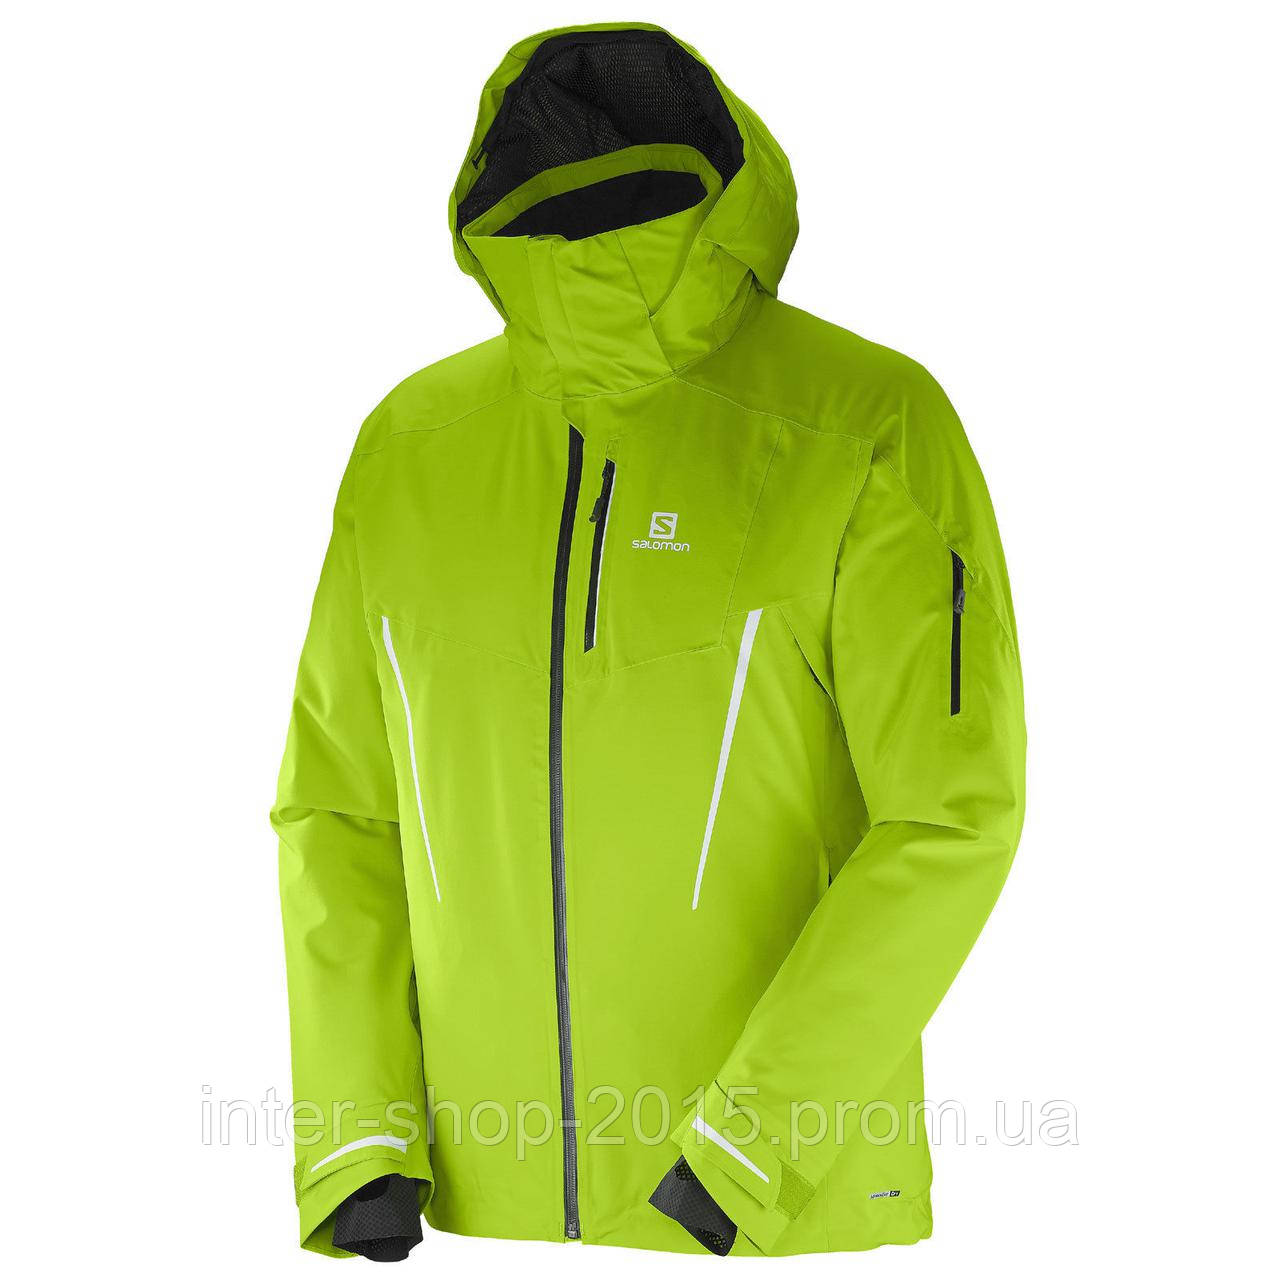 Купить мужскую горнолыжную куртку Salomon, продажа в Украине, по доступной  цене.